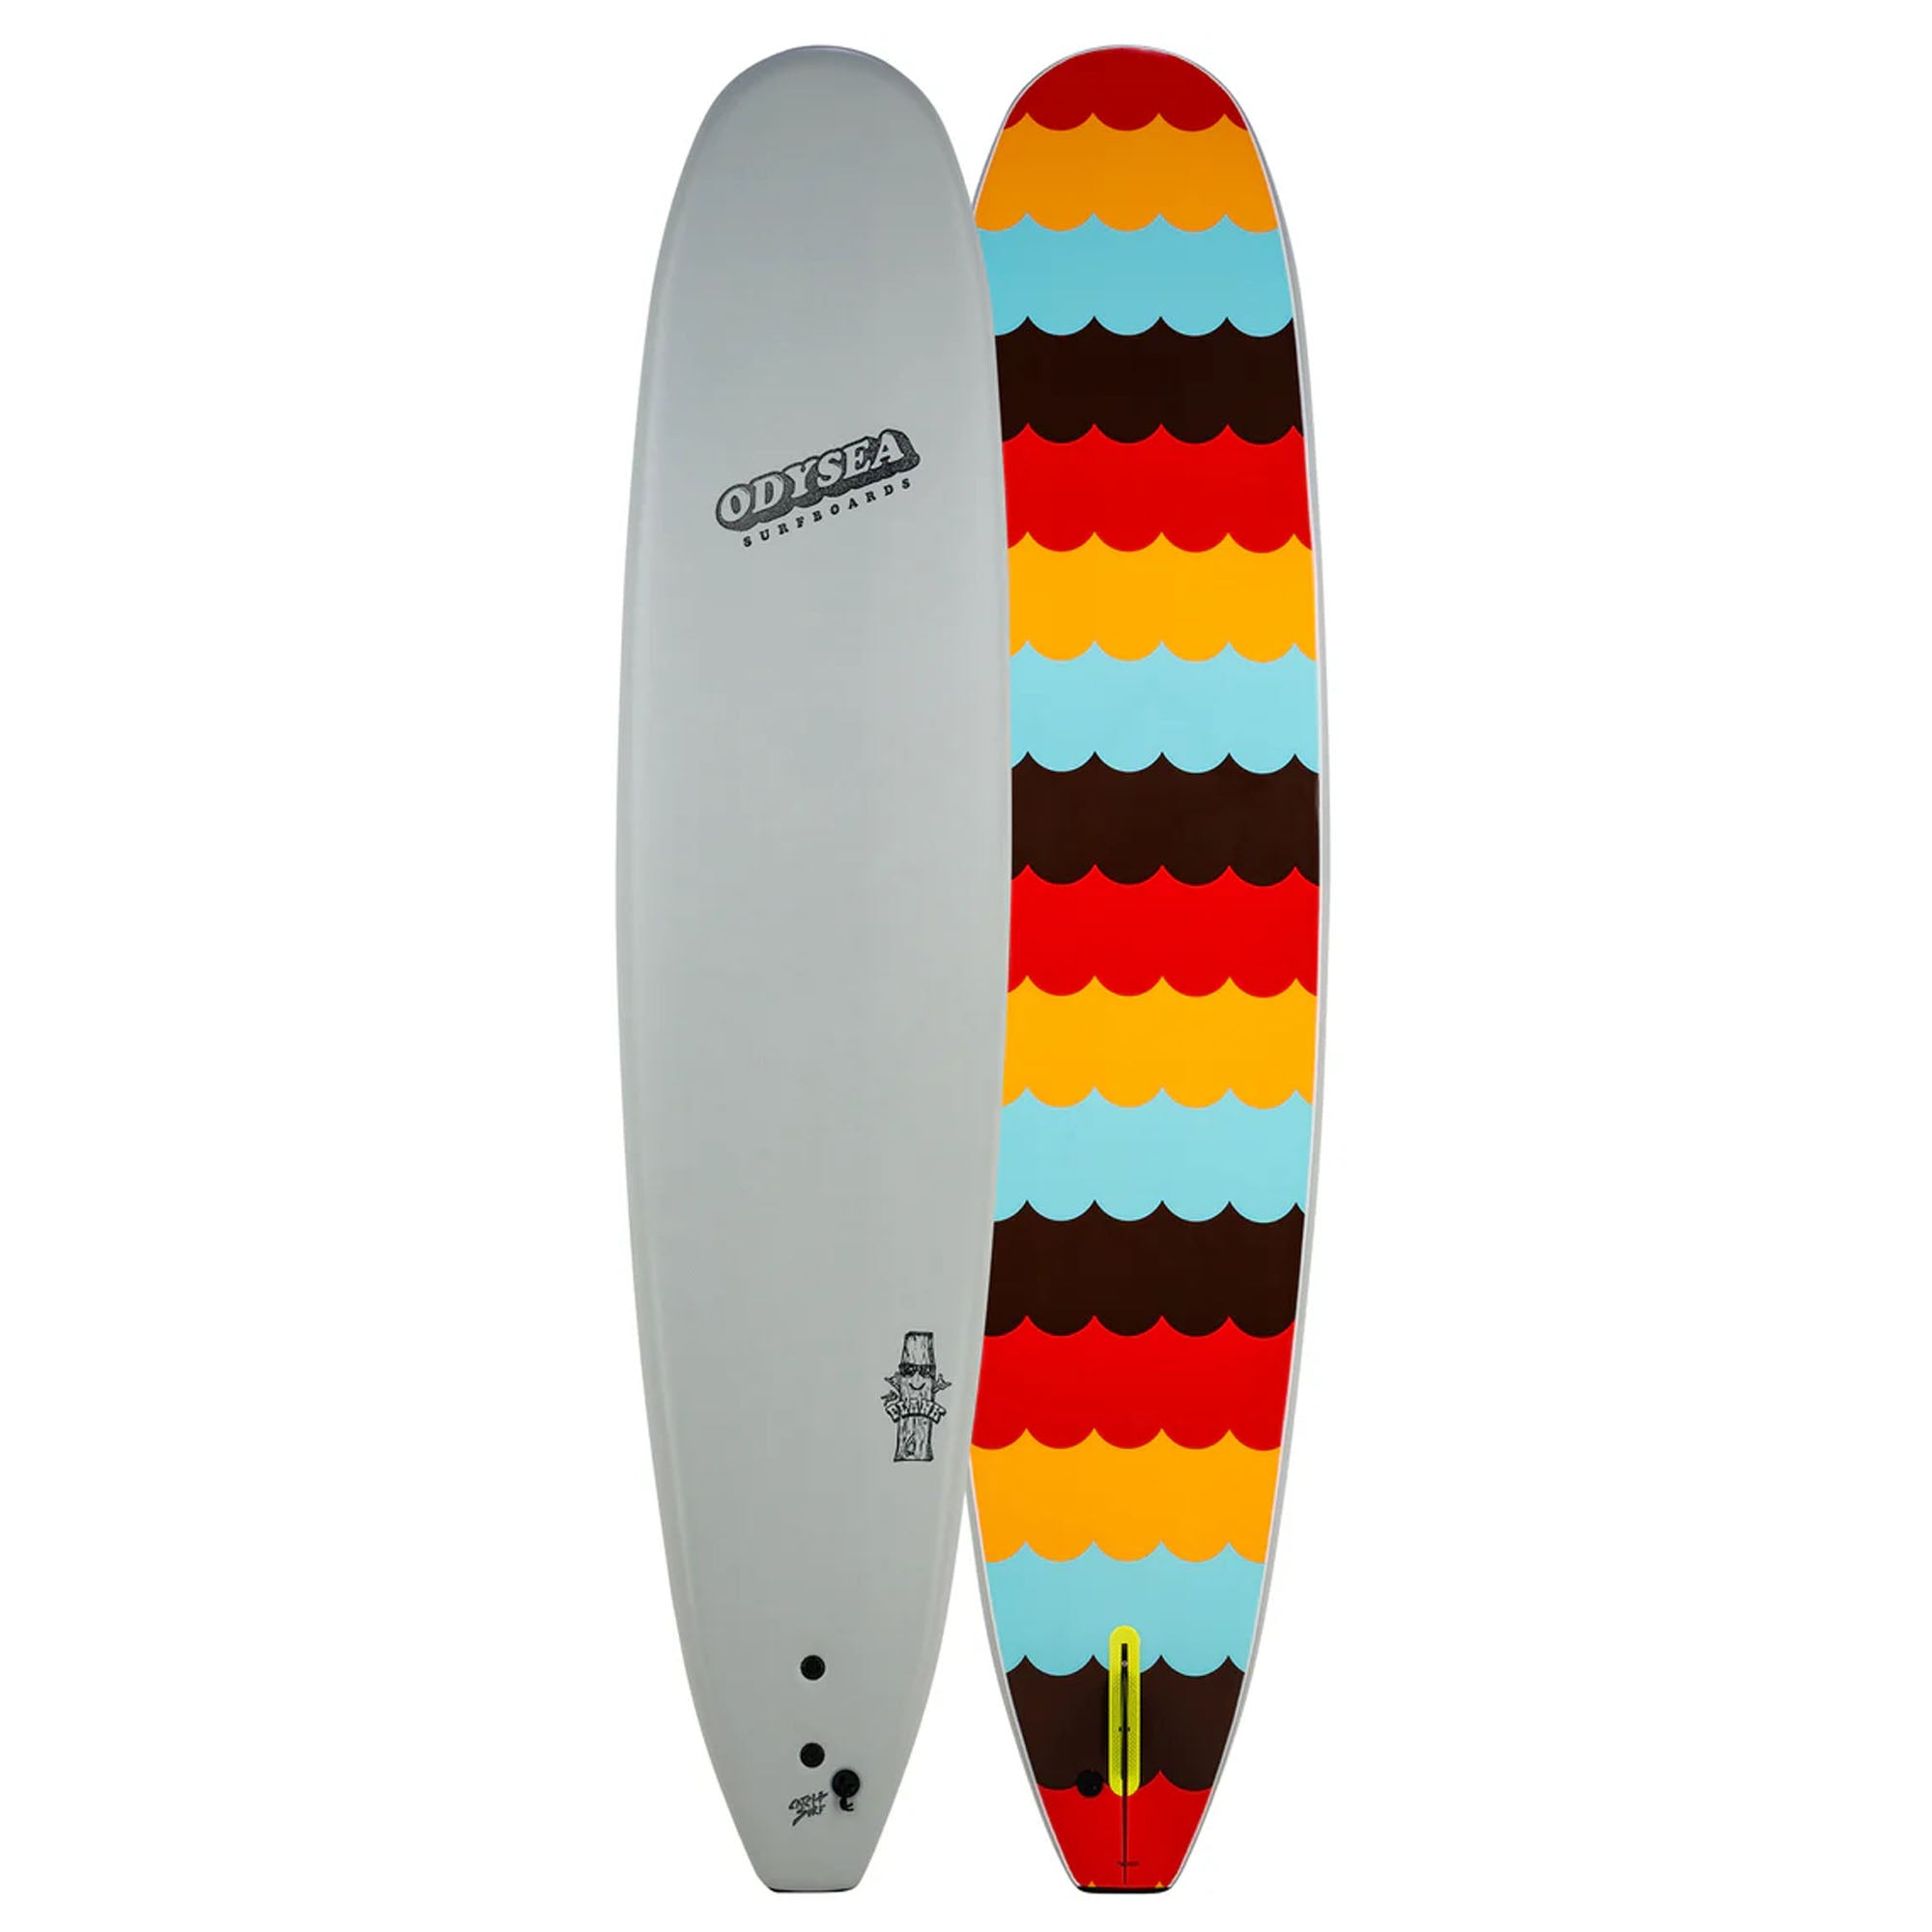 Catch Surf Odysea Plank Single Fin 9'0 Soft Surfboard